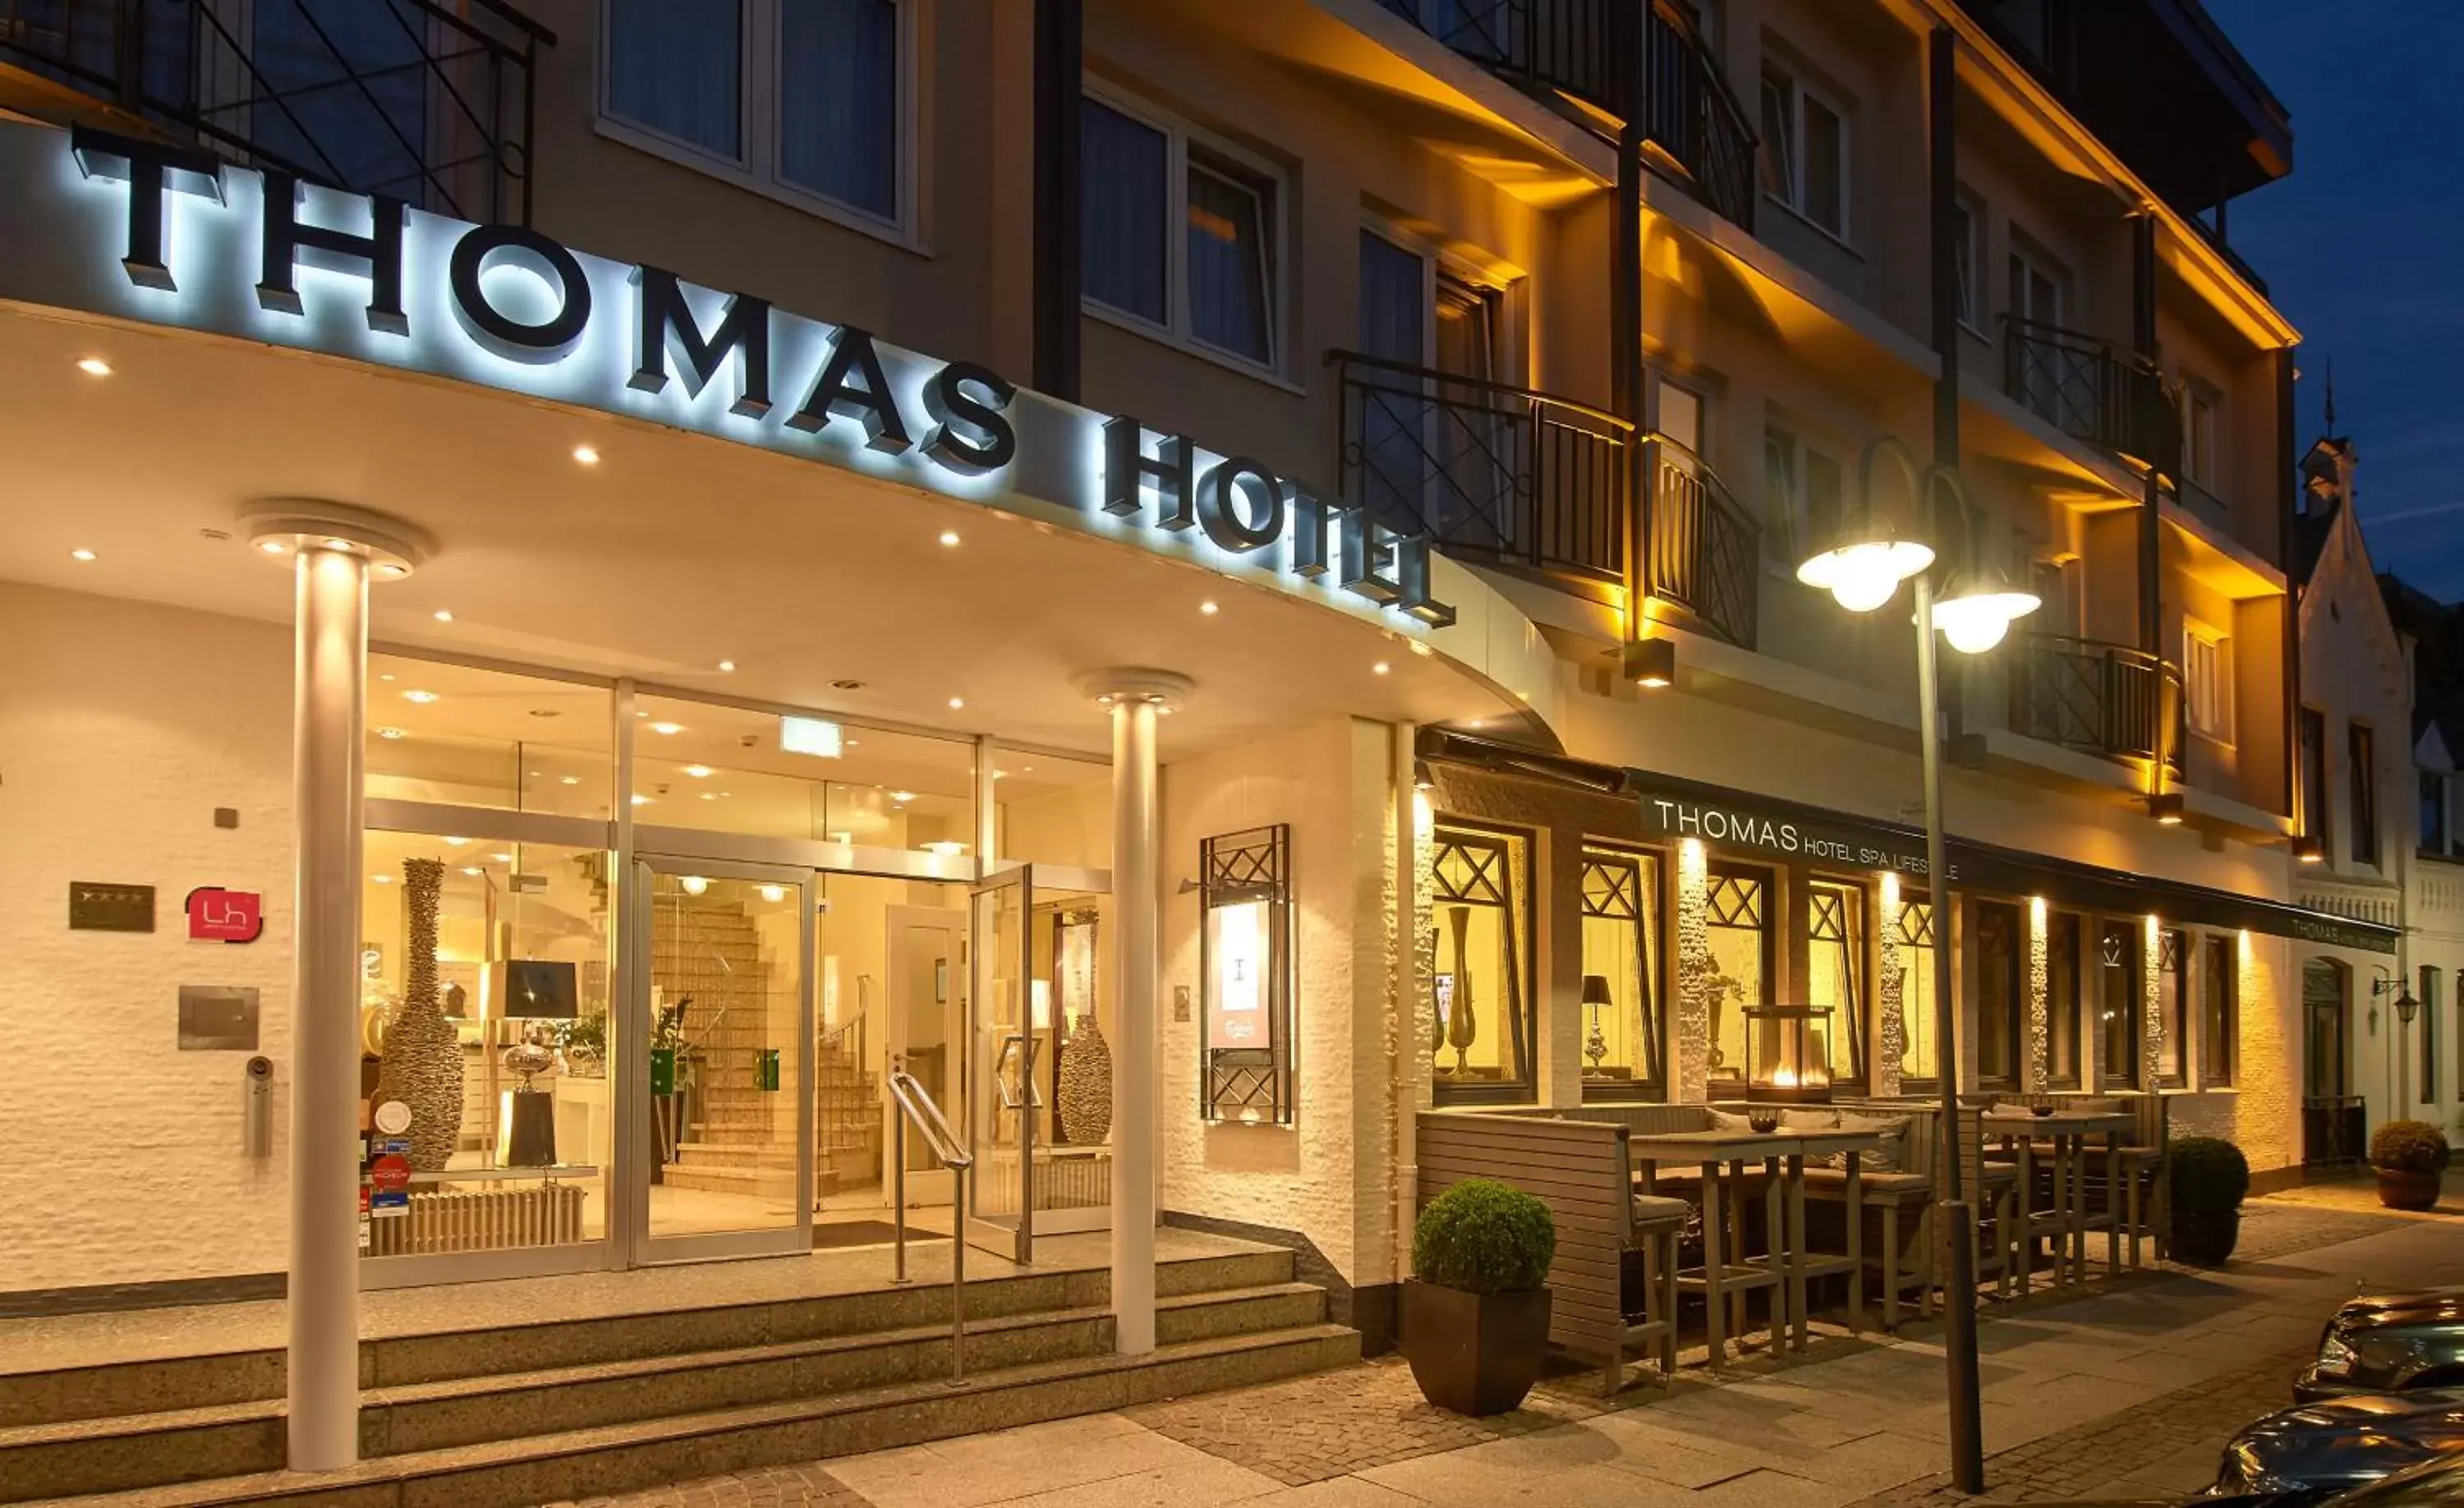 Facade/entrance in Thomas Hotel Spa & Lifestyle